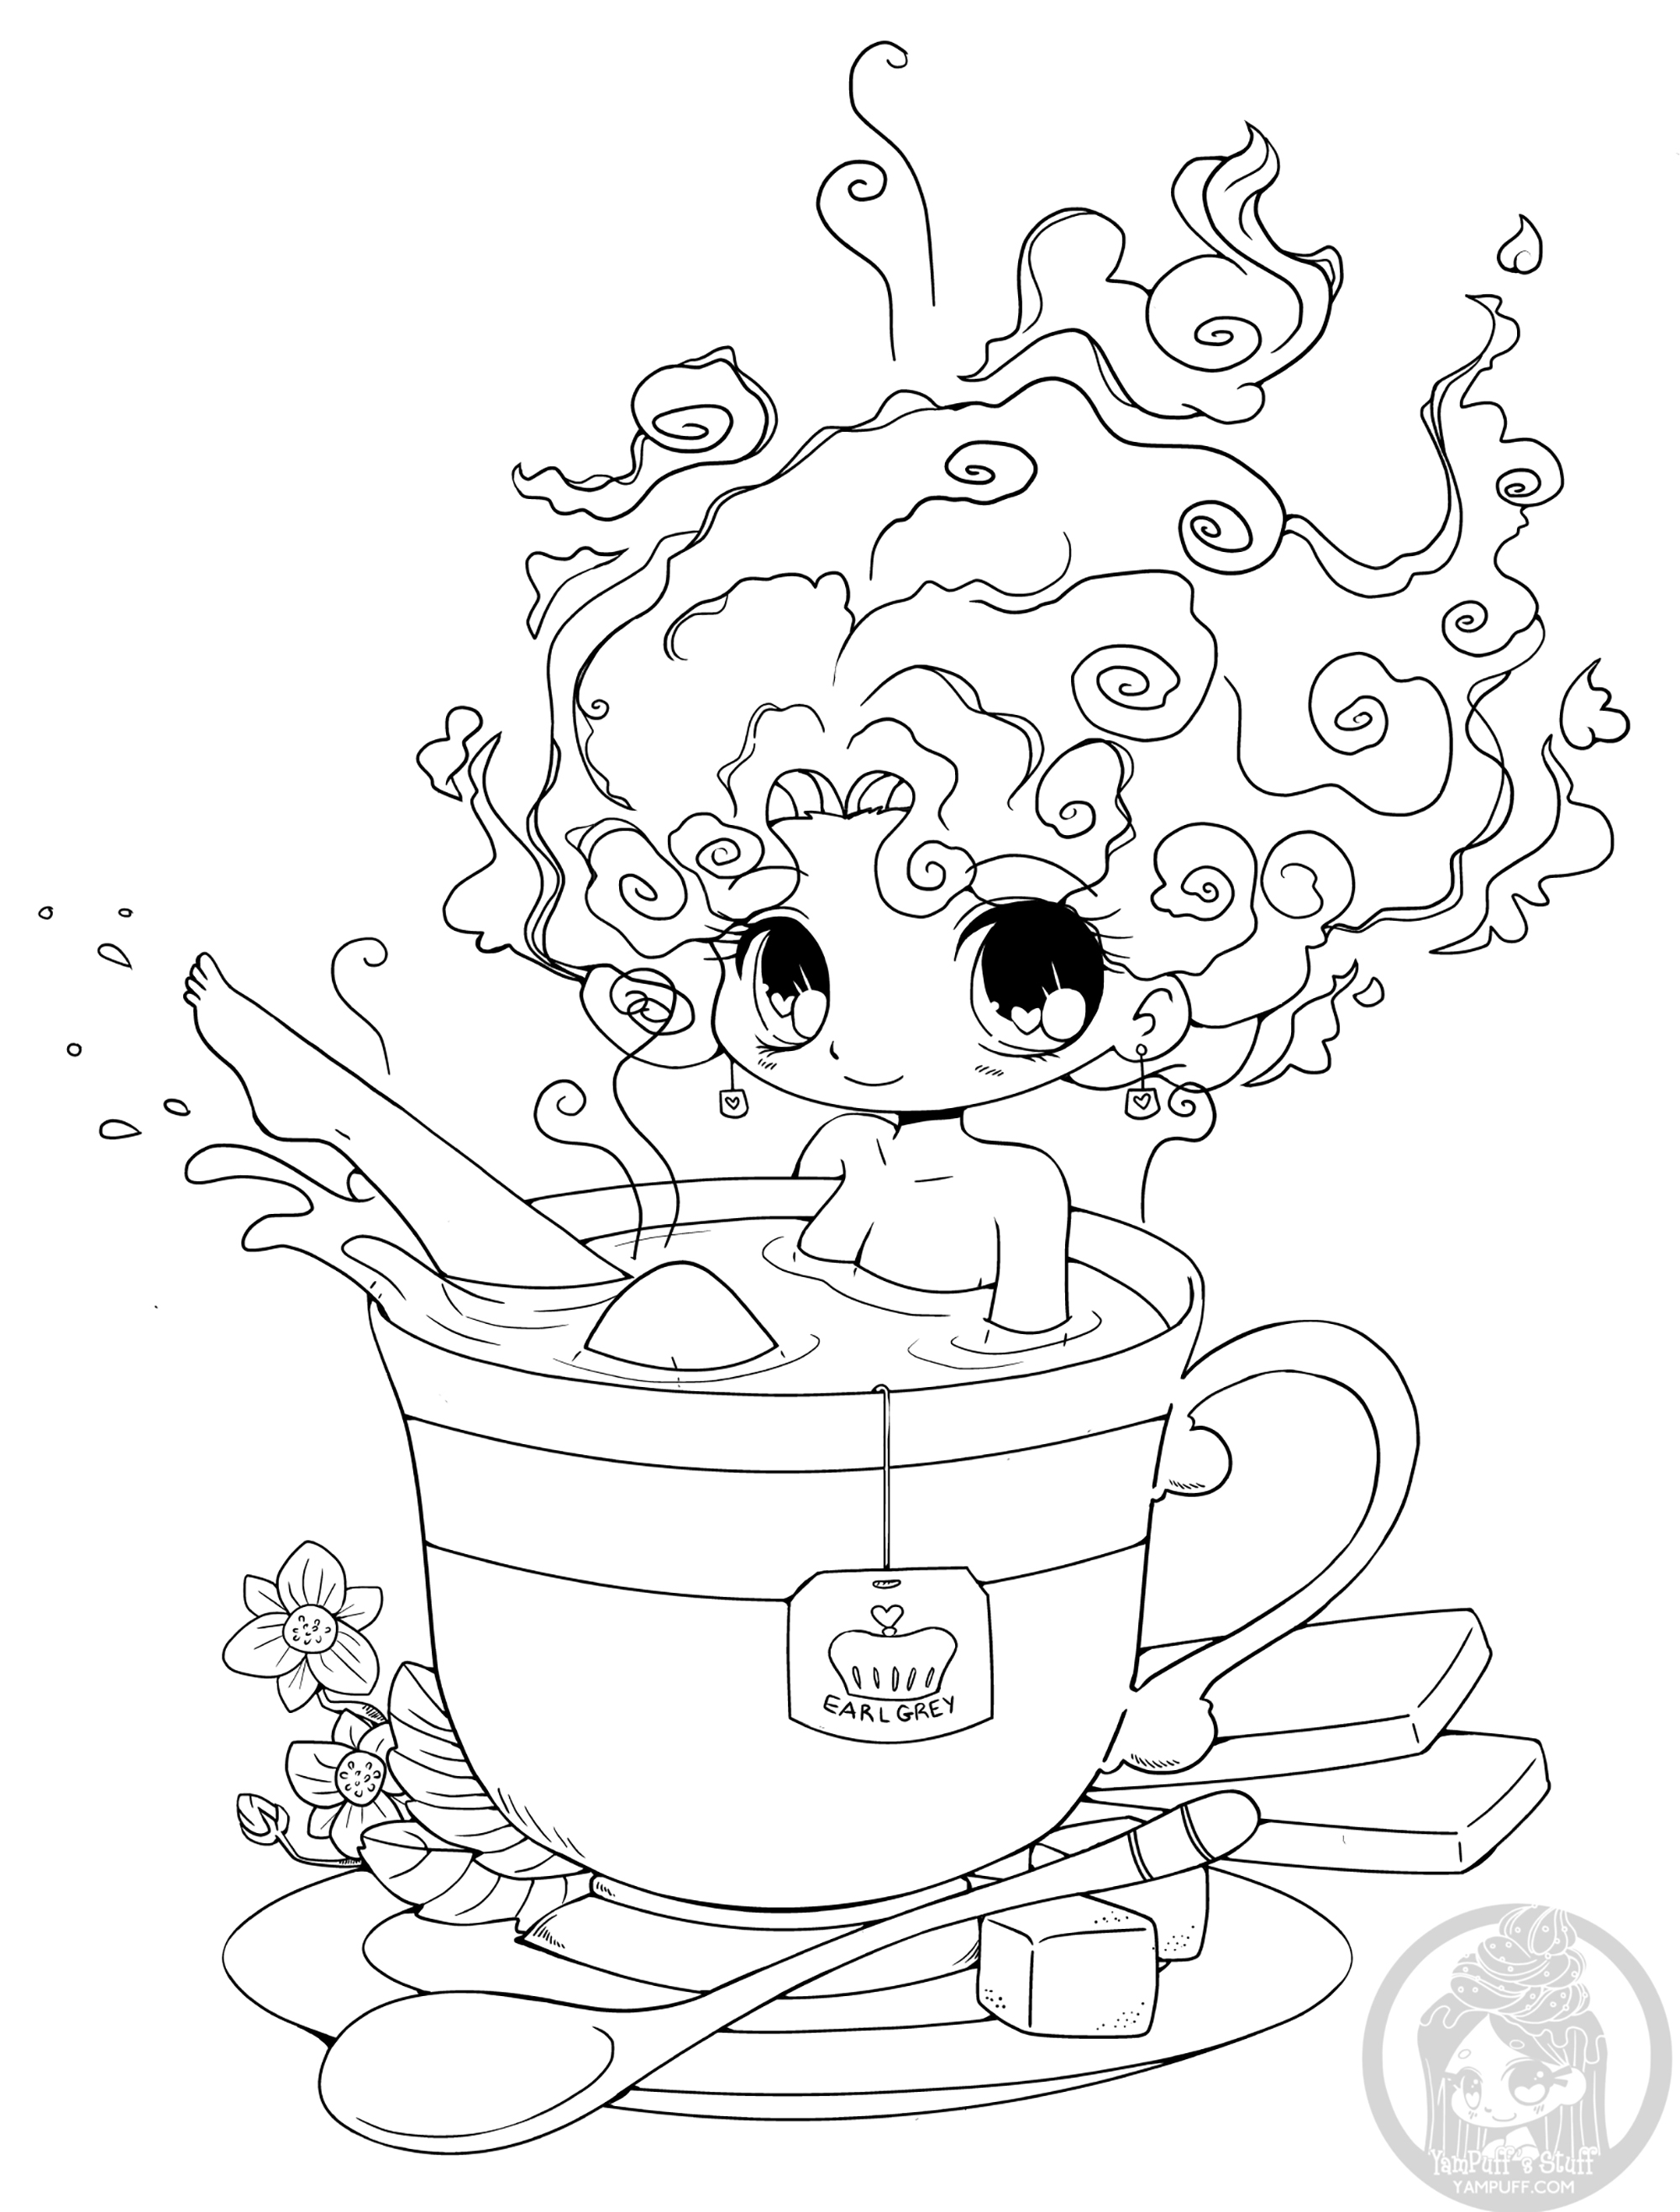 Uma chávena de chá é o novo banho! Venha experimentar!, Artista : Yampuff